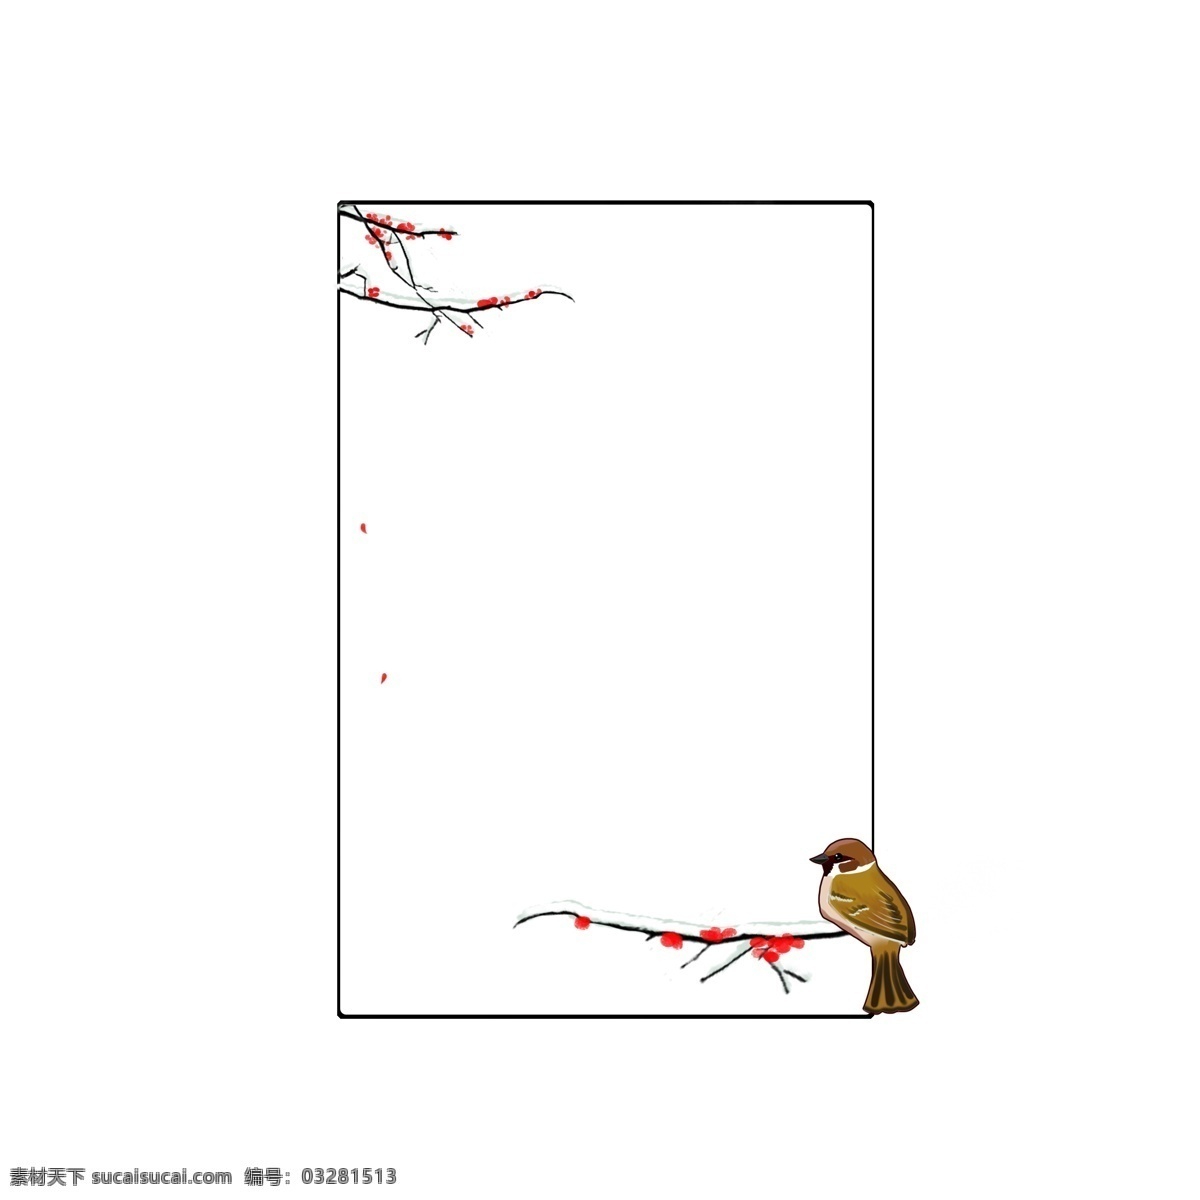 小鸟 边框 手绘 插画 小鸟边框 红色 小花 漂亮的边框 可爱的边框 边框插画 手绘边框 褐色的树枝